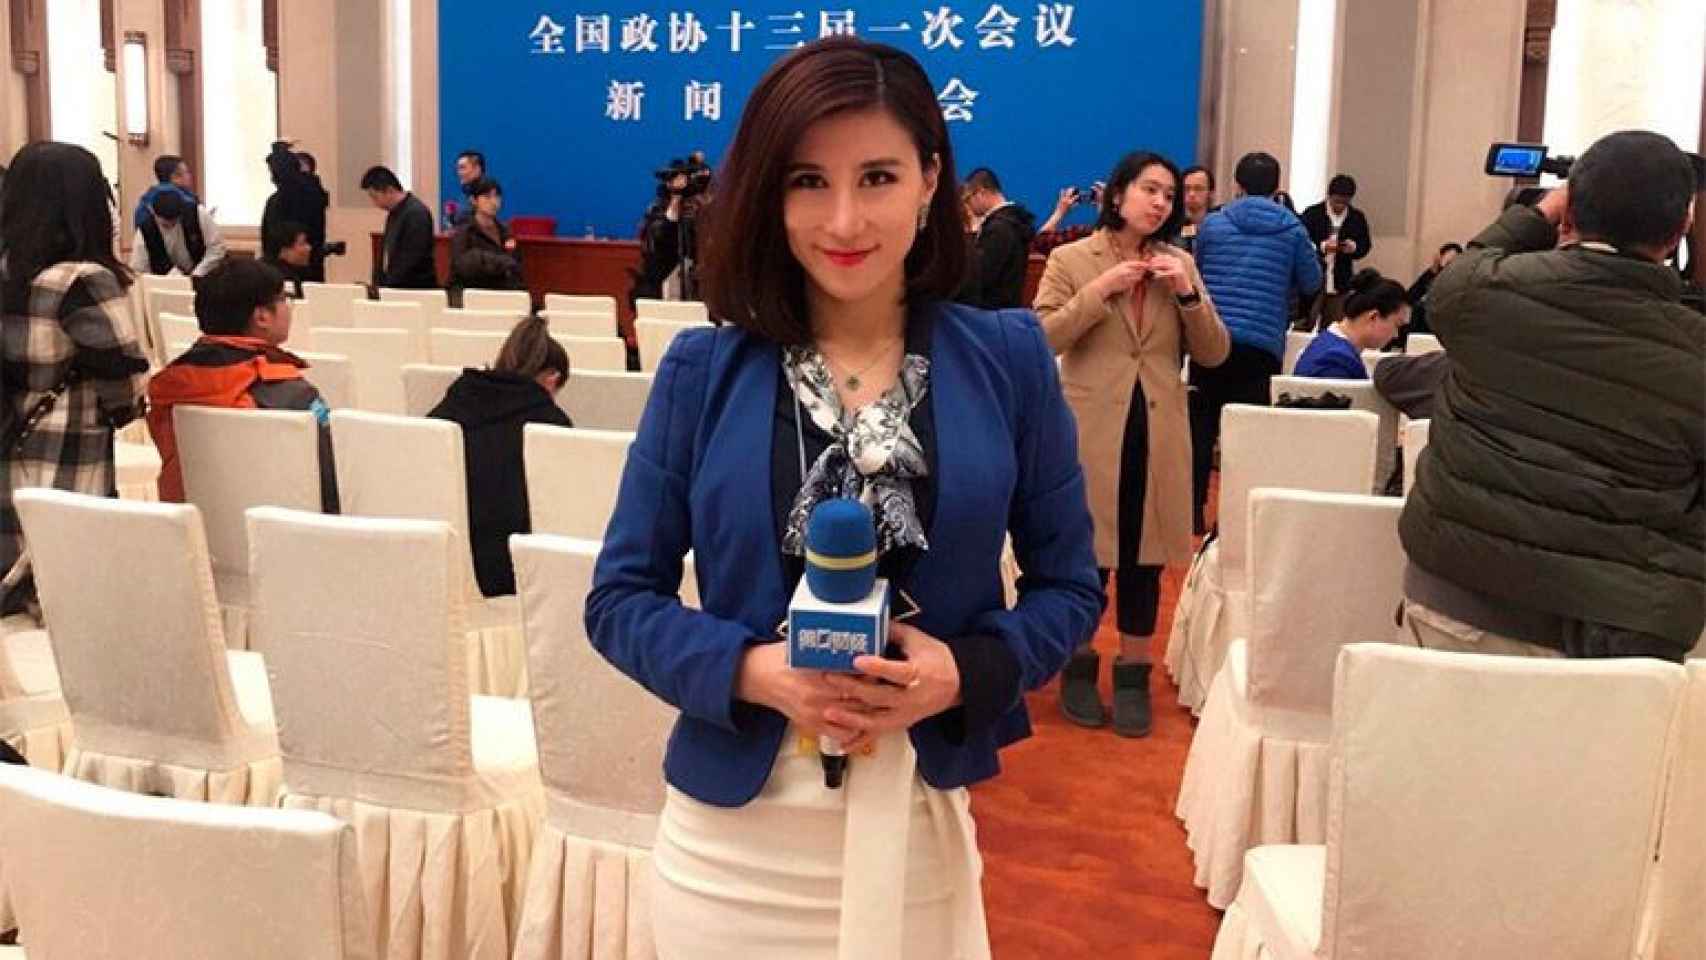 Una periodista china en el Palacio del Pueblo de Pekín, donde hace pocos días se celebró la Asamblea Nacional Popular